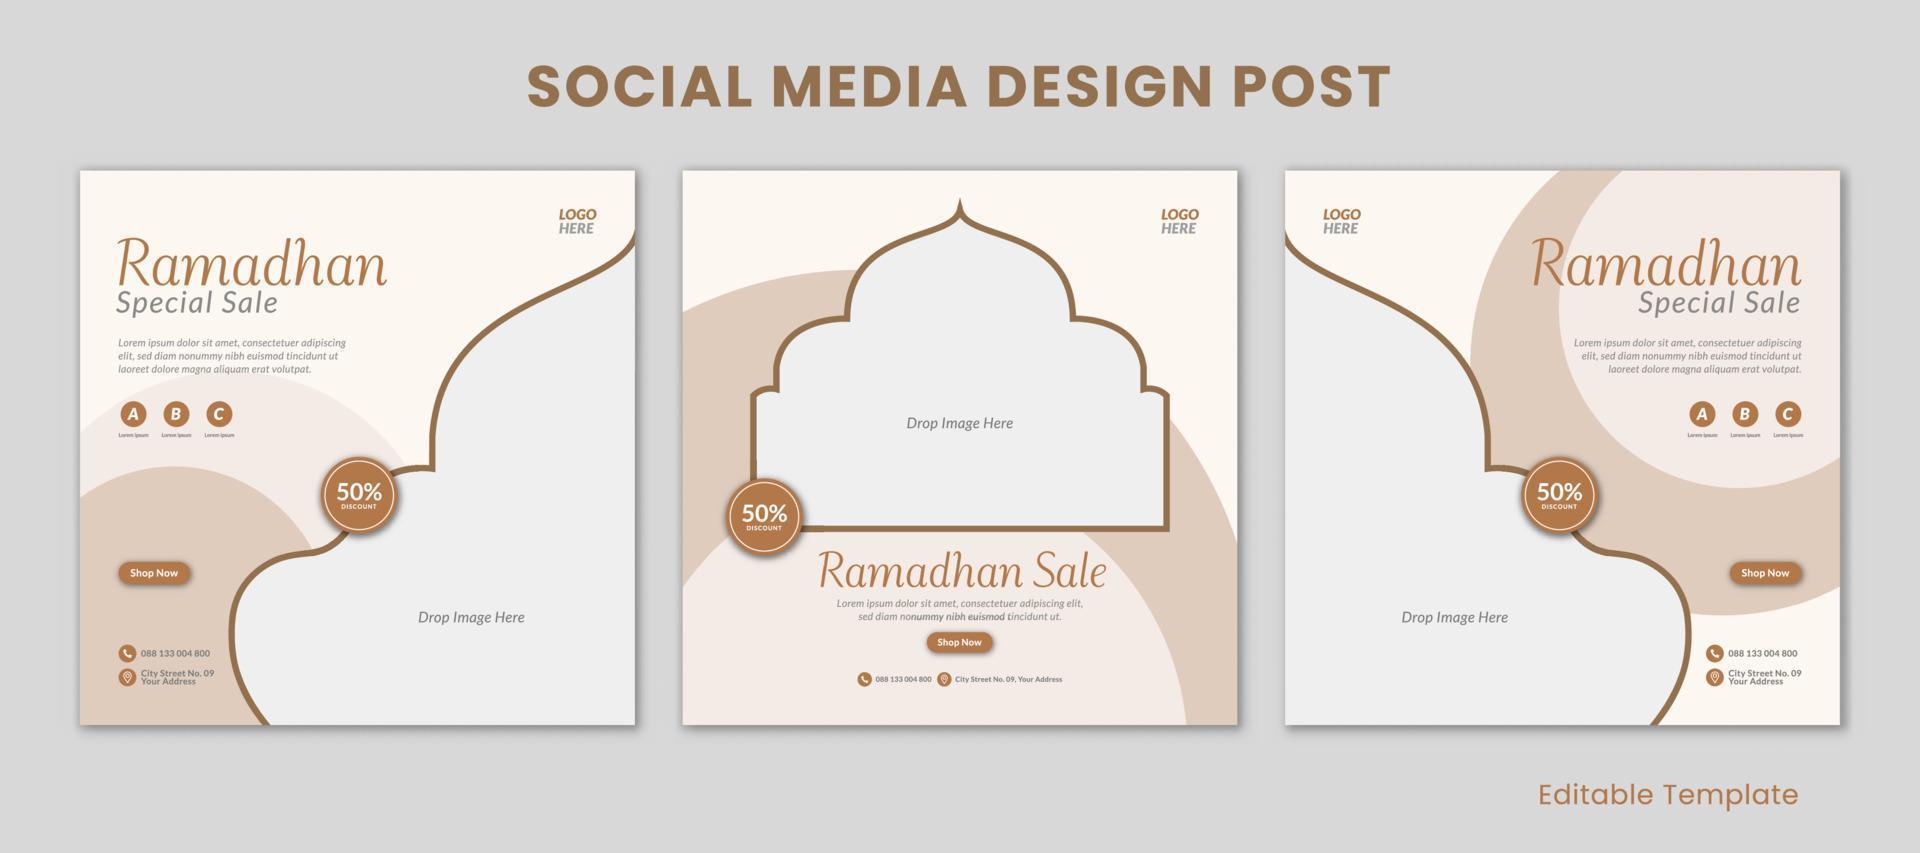 einstellen von 3 editierbar Vorlagen Ramadhan Sozial Medien Design Post. geeignet zum Verkauf Banner, Förderung, Präsentation, Werbung, Mode, Kaffee Geschäft vektor